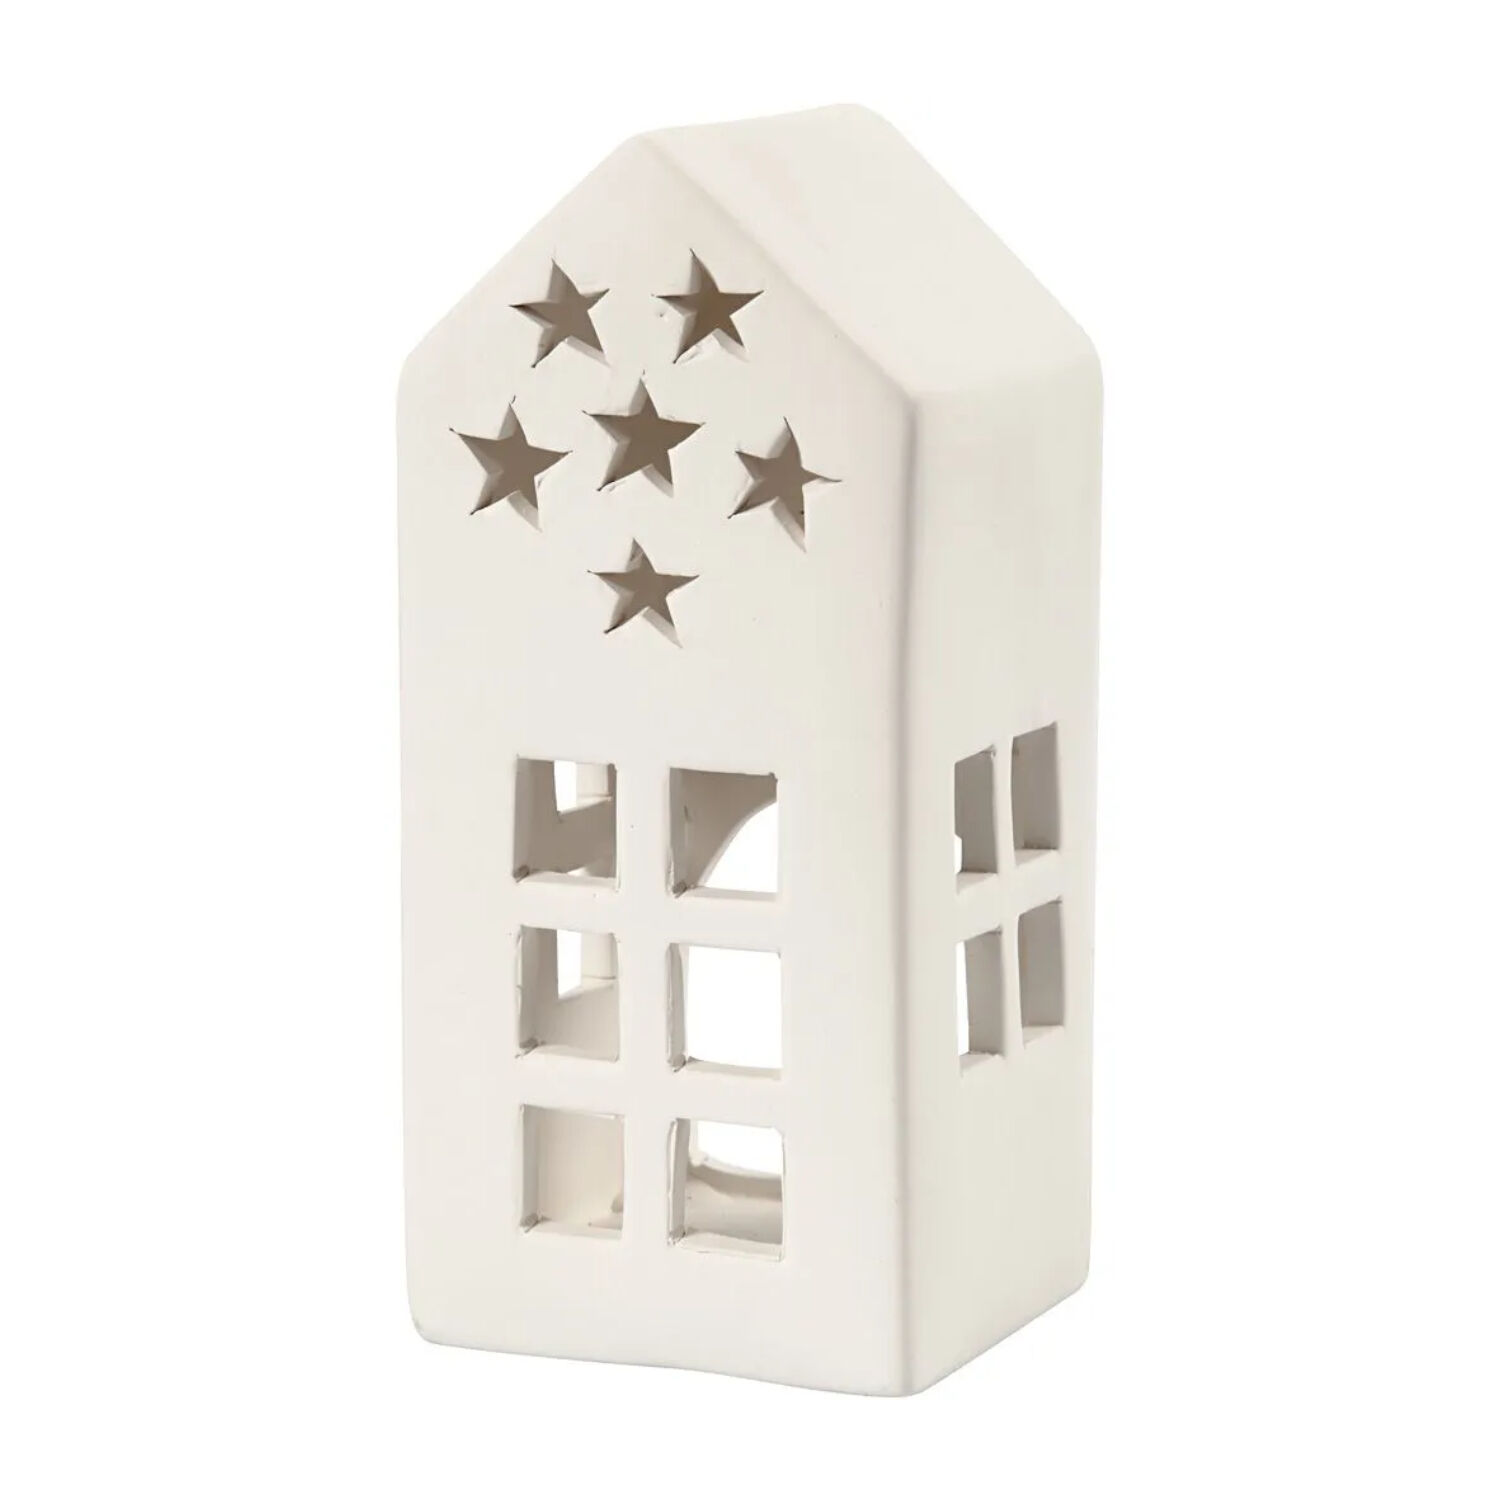 NEU Teelicht-Haus mit Sternen, Terrakotta-Wei, Gre 7x7x16 cm, 1 Stck